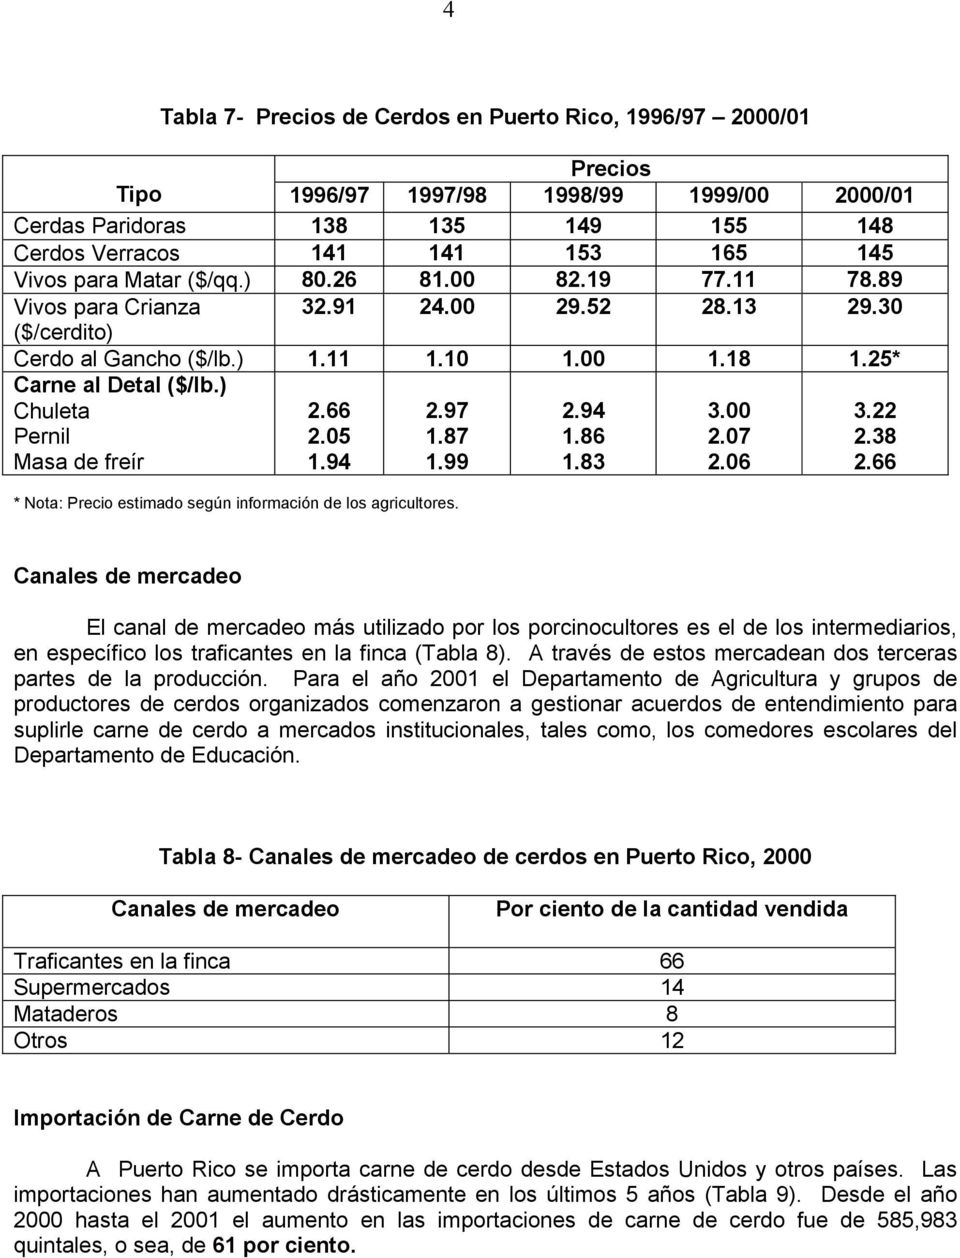 ) Chuleta Pernil Masa de freír 2.66 2.05 1.94 2.97 1.87 1.99 2.94 1.86 1.83 3.00 2.07 2.06 3.22 2.38 2.66 * Nota: Precio estimado según información de los agricultores.